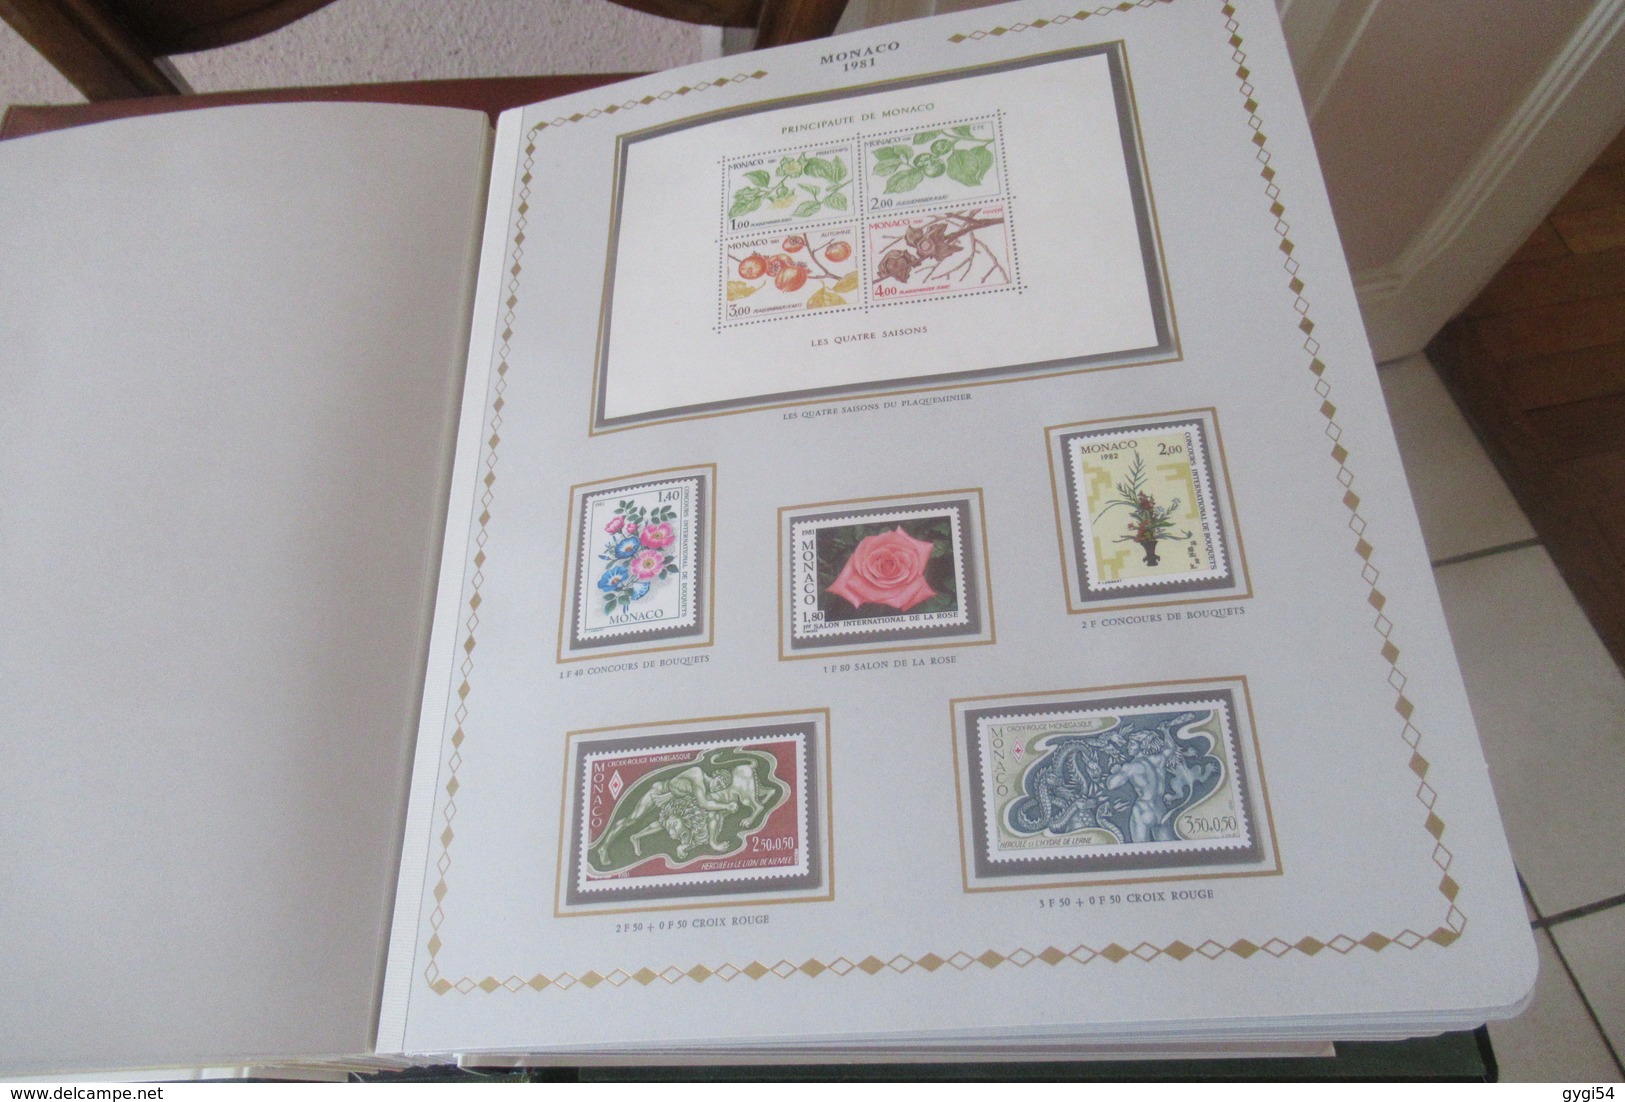 Monaco dans un Album Princesse ( avec son étui )  1973 à 1981 en timbres poste cat yt  n°916  à  1301 n**  MNH cote 974